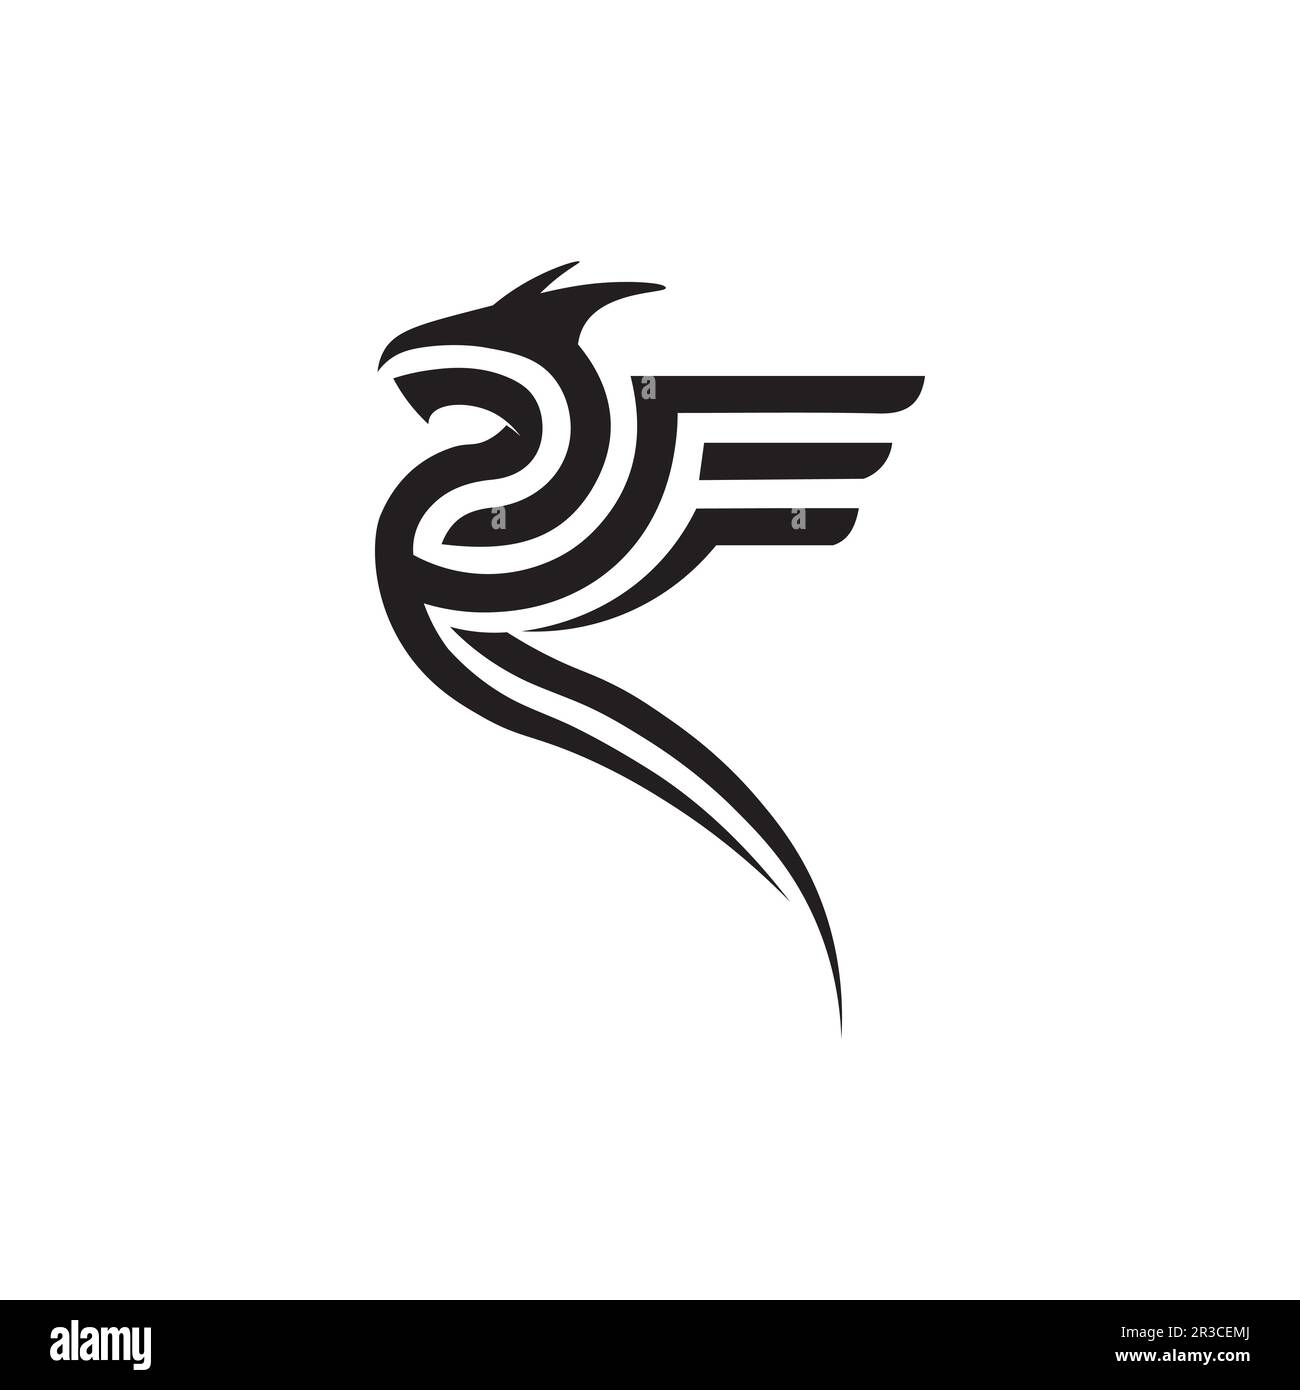 Dragon design logo vector icon illustration design logo template fantasy animals Stock Vector